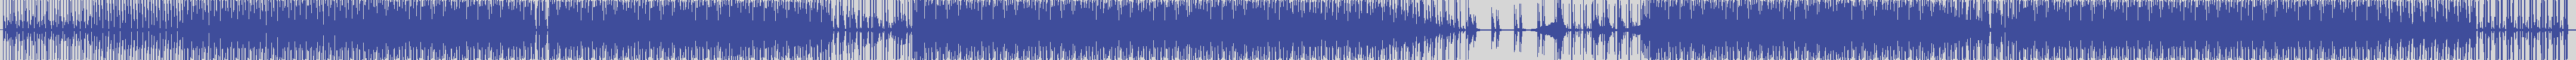 atomic_recordings [AR016] Lair - The Secret [Leix Remix] audio wave form